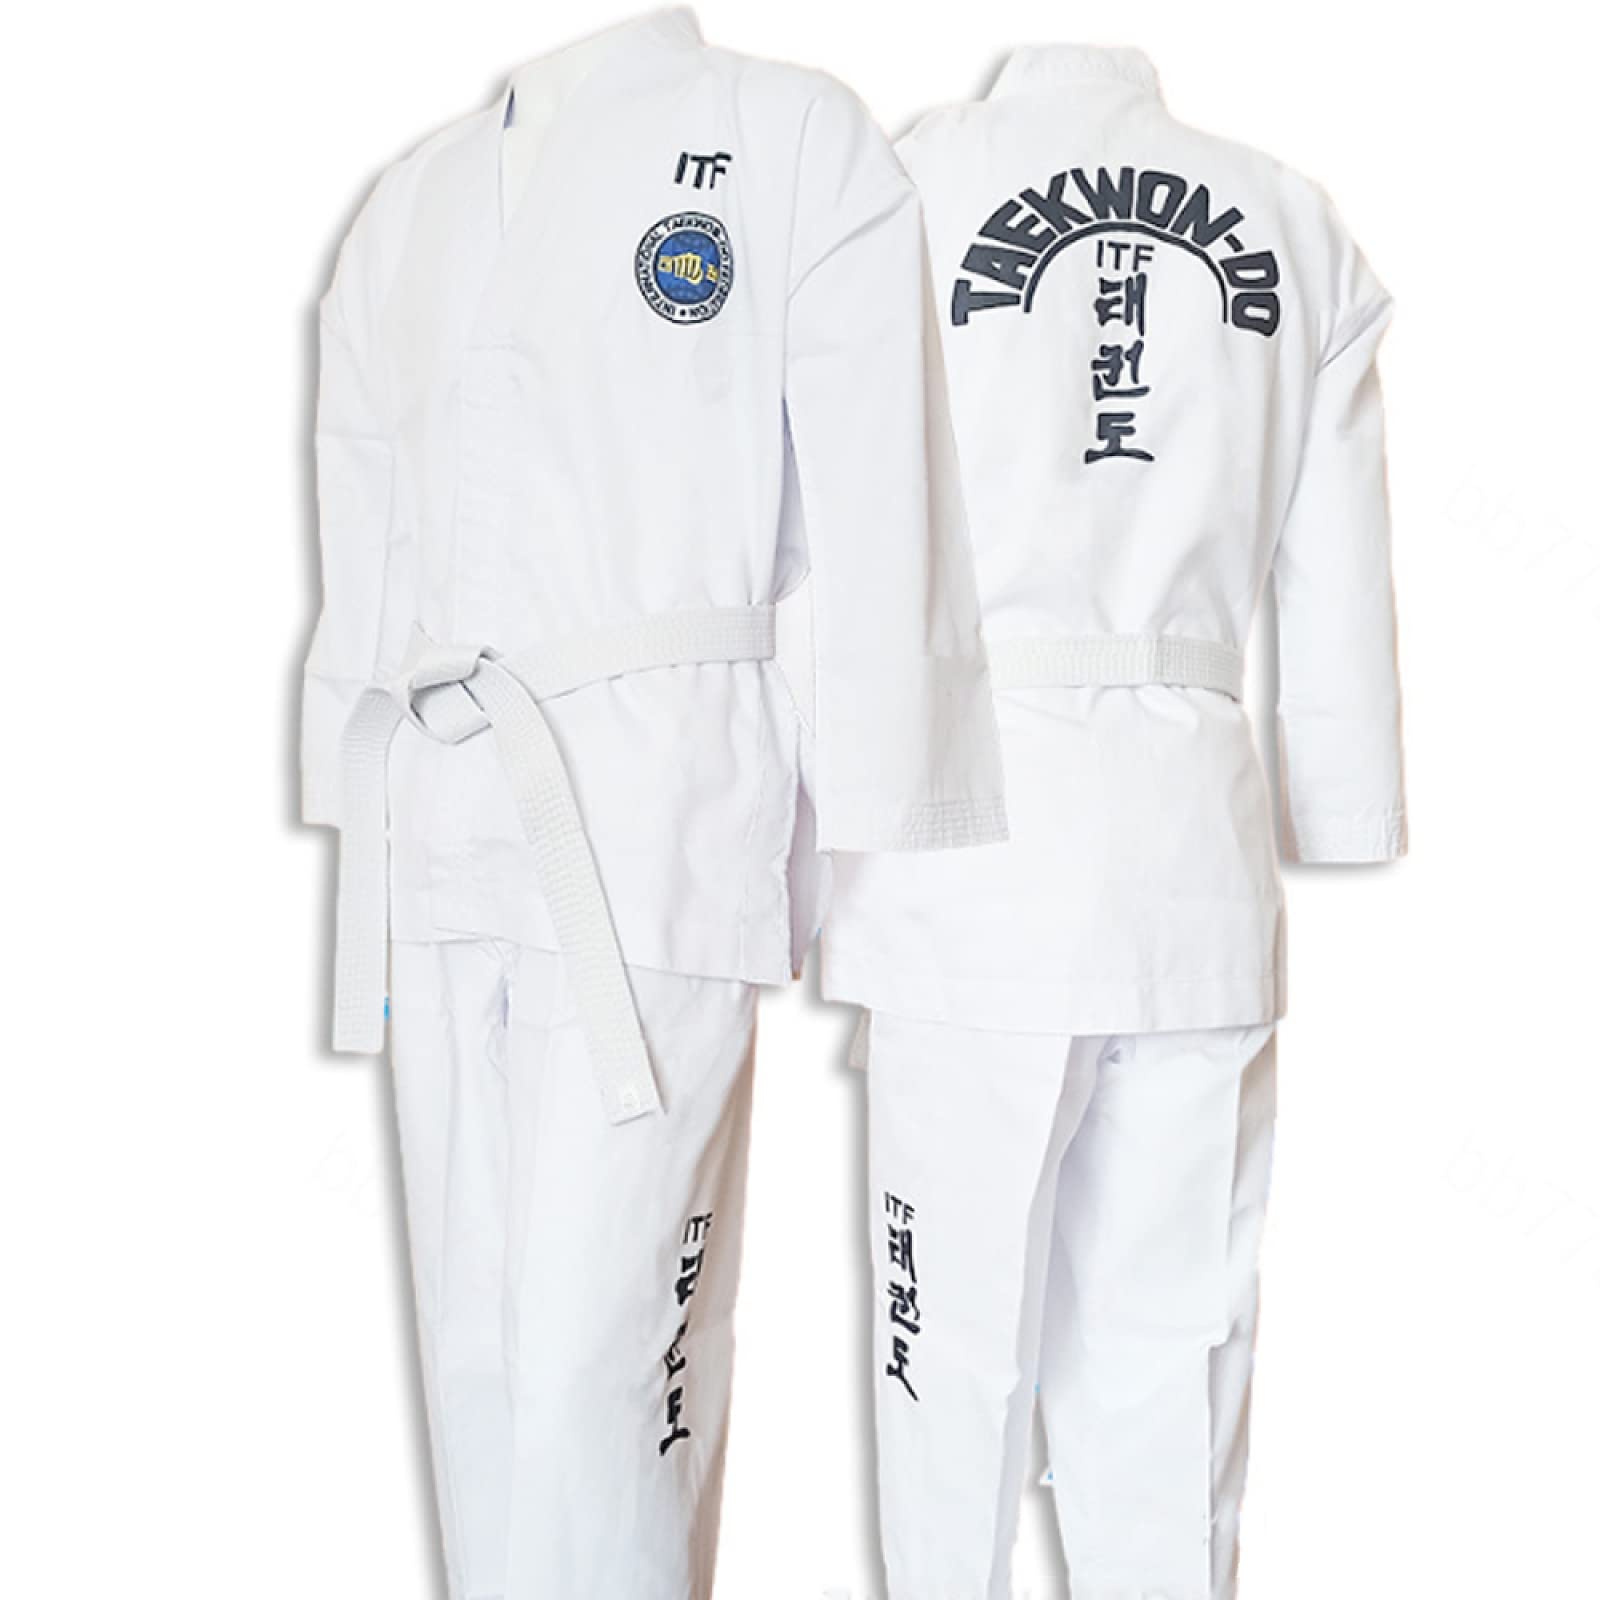 ITF Taekwondo Uniform Kinder Erwachsene Gestreifter Stoff Karate Gi Judo Anzug für Wettkampf und Training,White-120